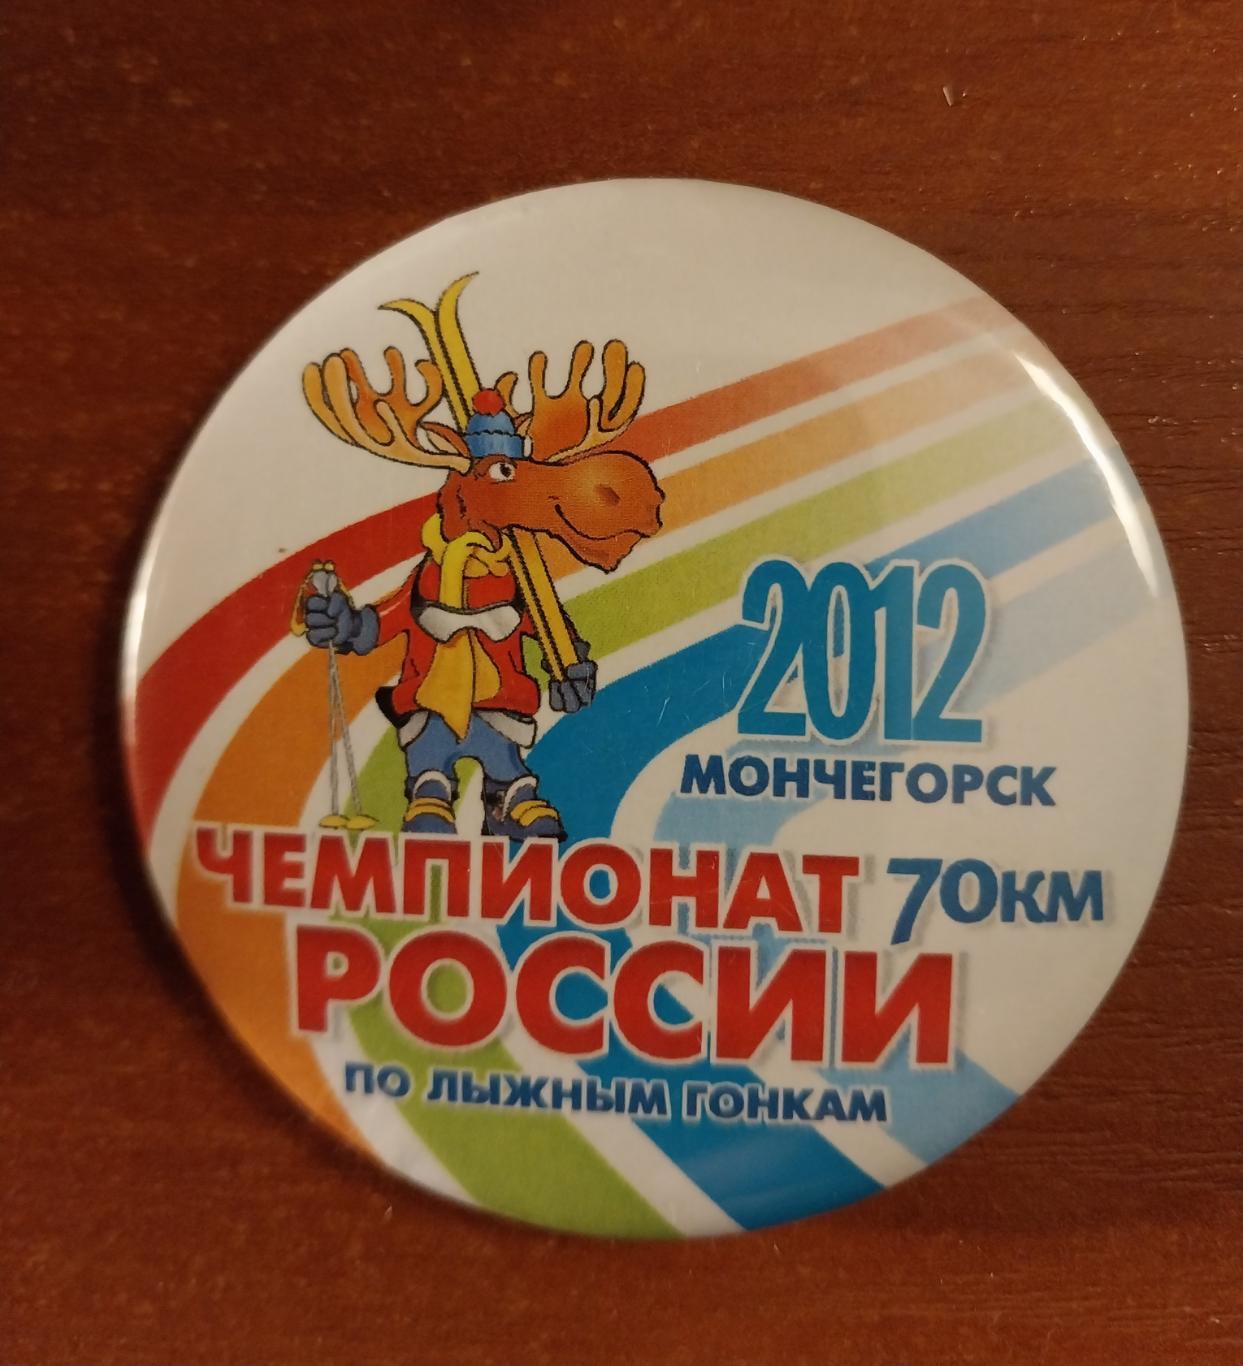 Лыжные гонки. Чемпионат России 2012. Мончегорск. 70 км